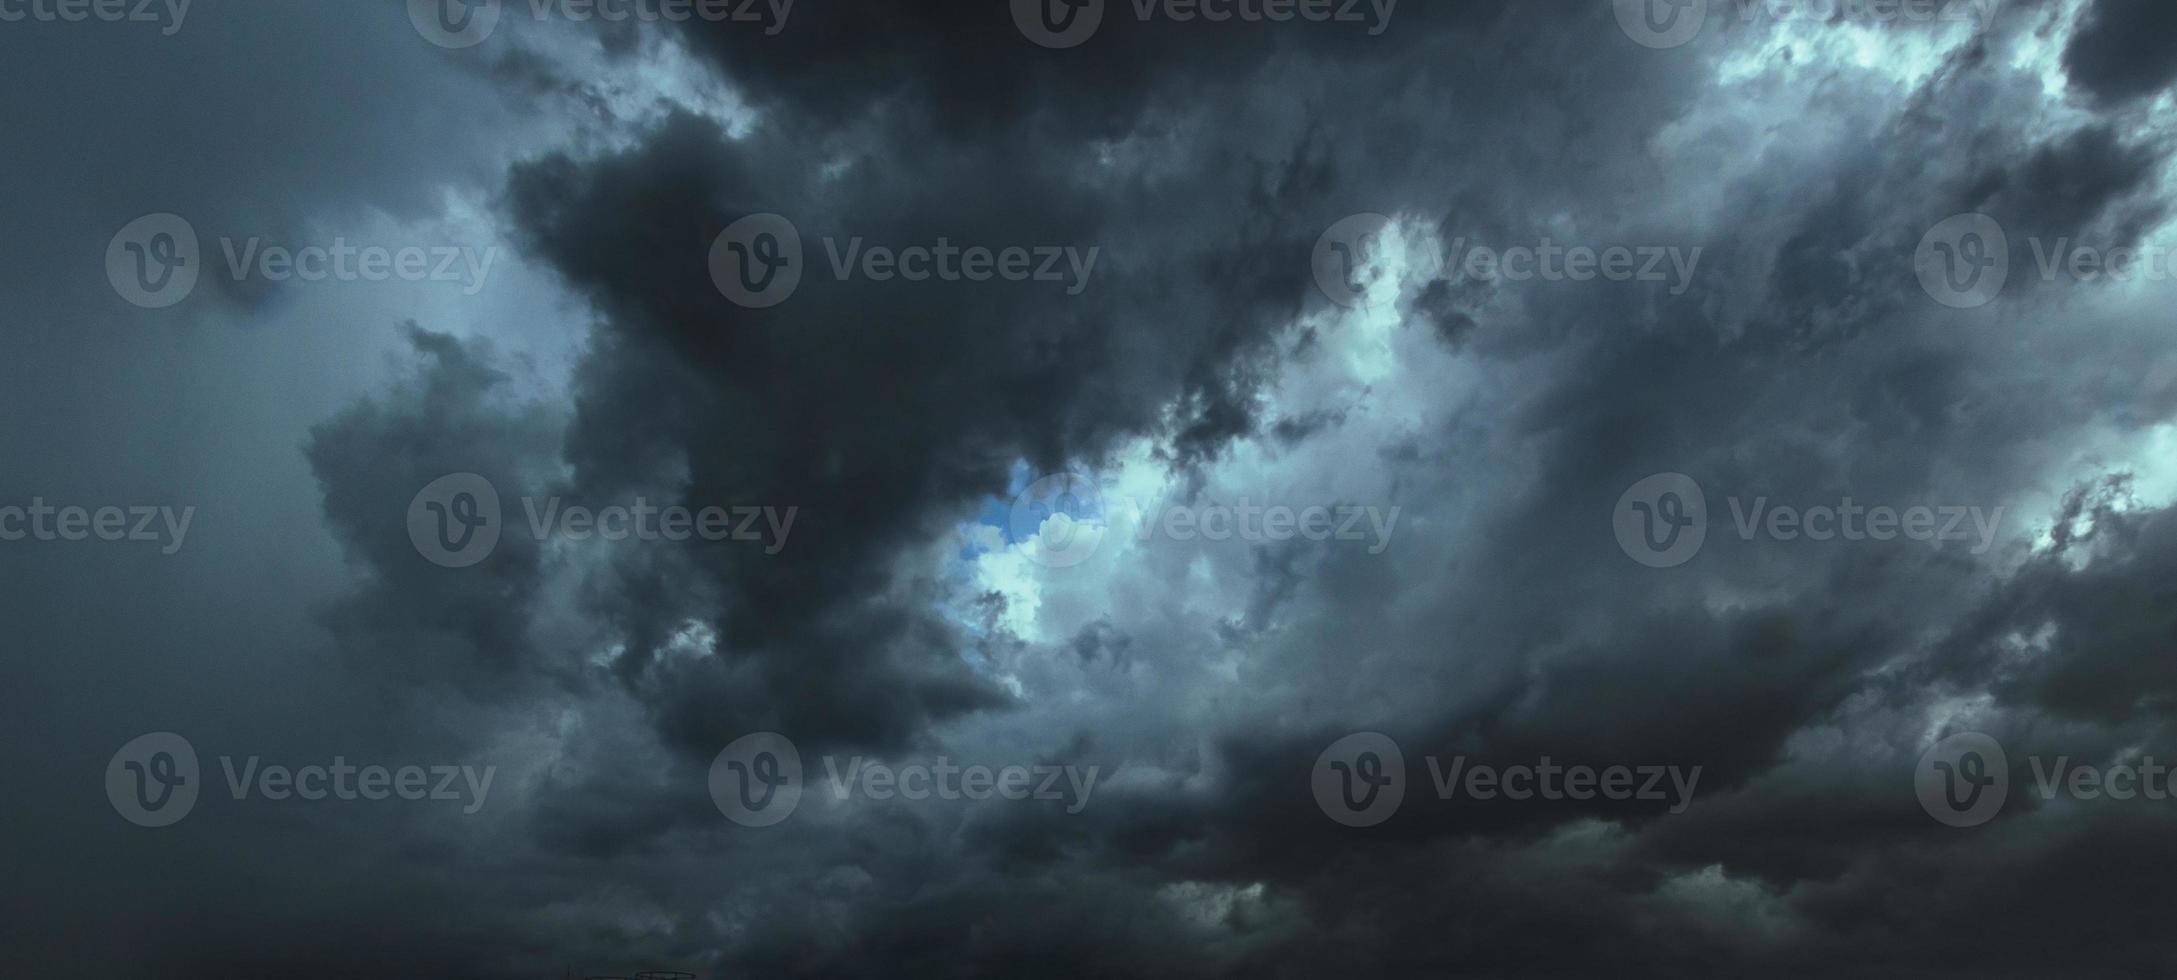 den mörka himlen med tunga moln som konvergerar och en våldsam storm före regnet. dåligt väder. foto